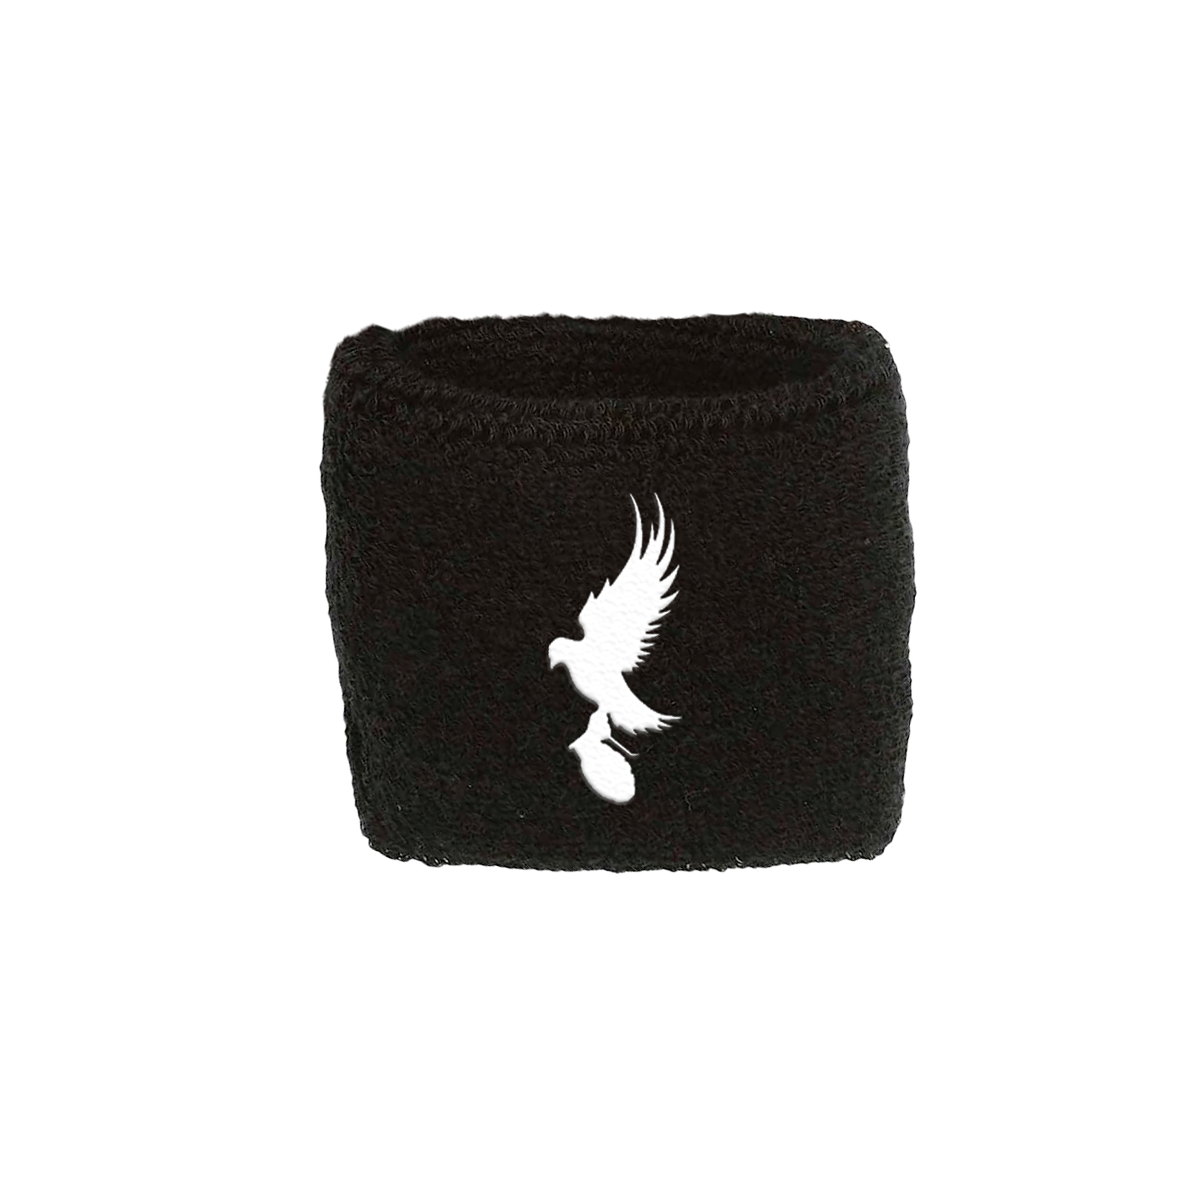 Dove & Grenade Embroidered Wristband (Black)